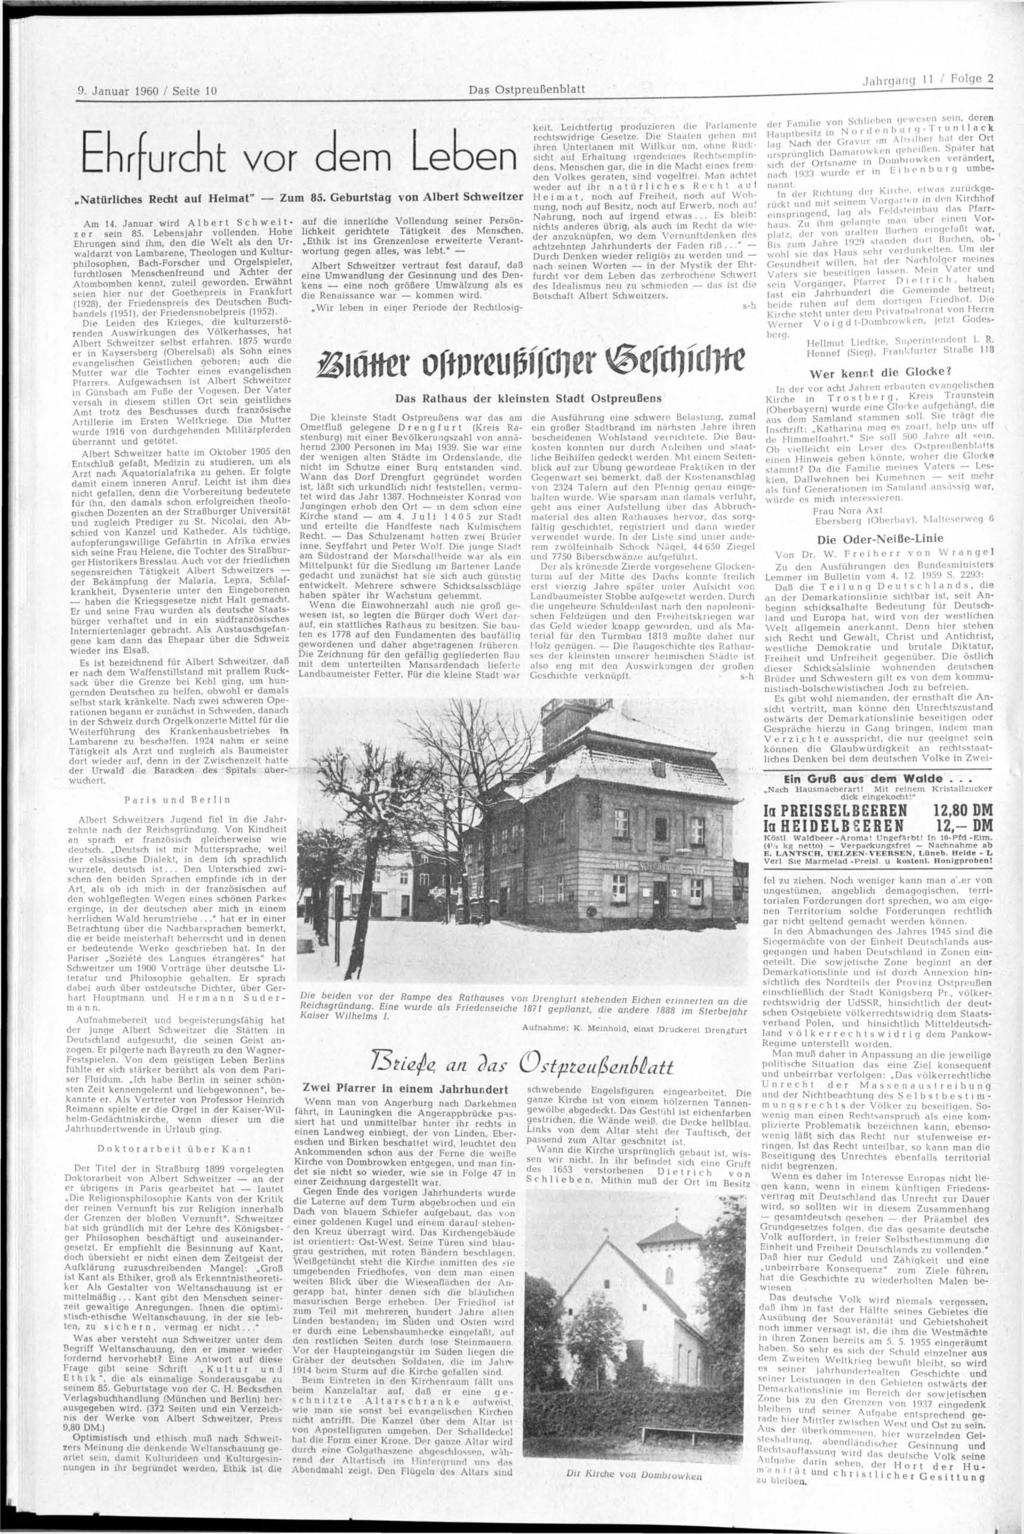 Jahrgang 11 / Folge 2 9. Januar 1960 / Seite 10 Das Ostpreußenblatt., : Ehrfurcht vor dem Leb en Natürliches Recht auf Heimat" Zum 85. Geburtstag von Albert Schweitzer Am 14.